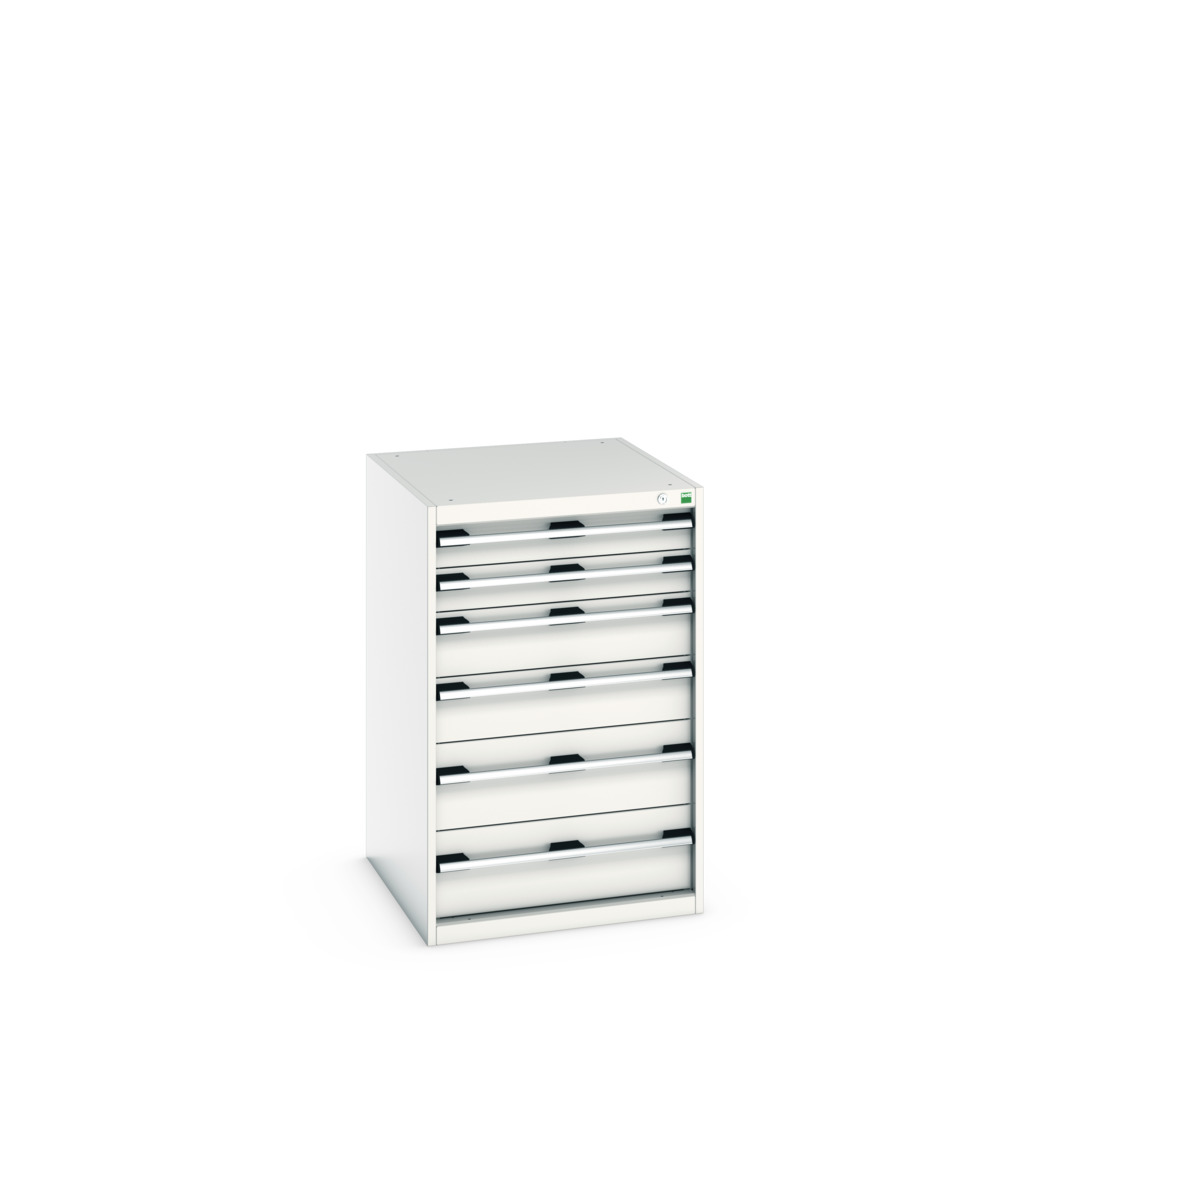 40027027.16V - cubio drawer cabinet